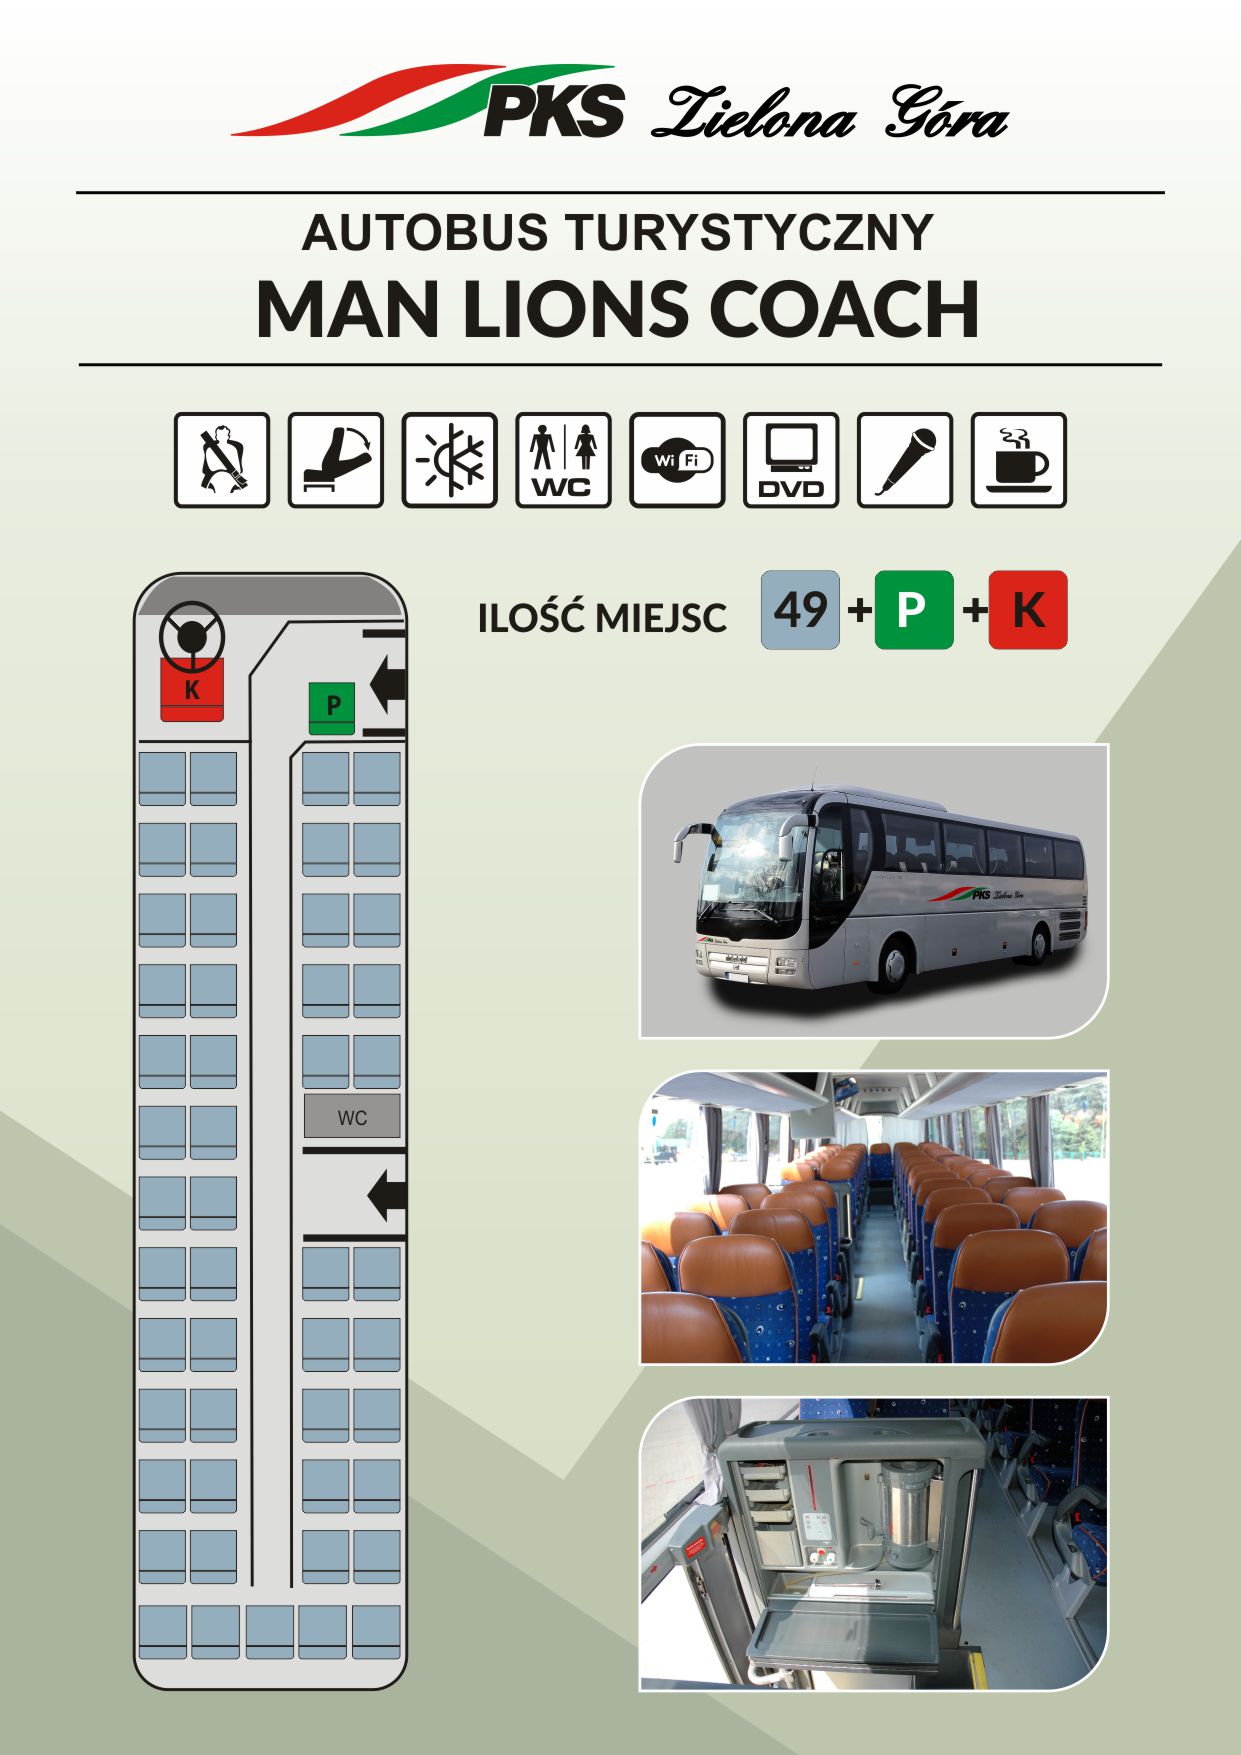 L   MAN LIONS